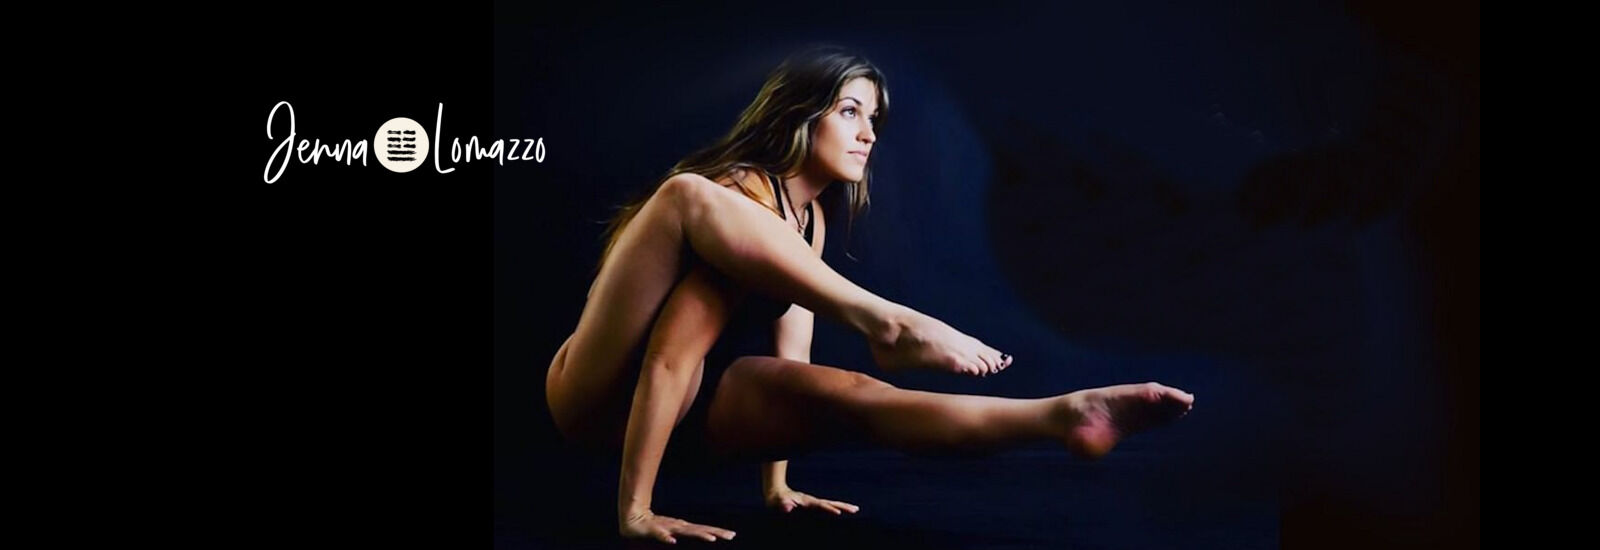 Jenna Lomazzo Yoga